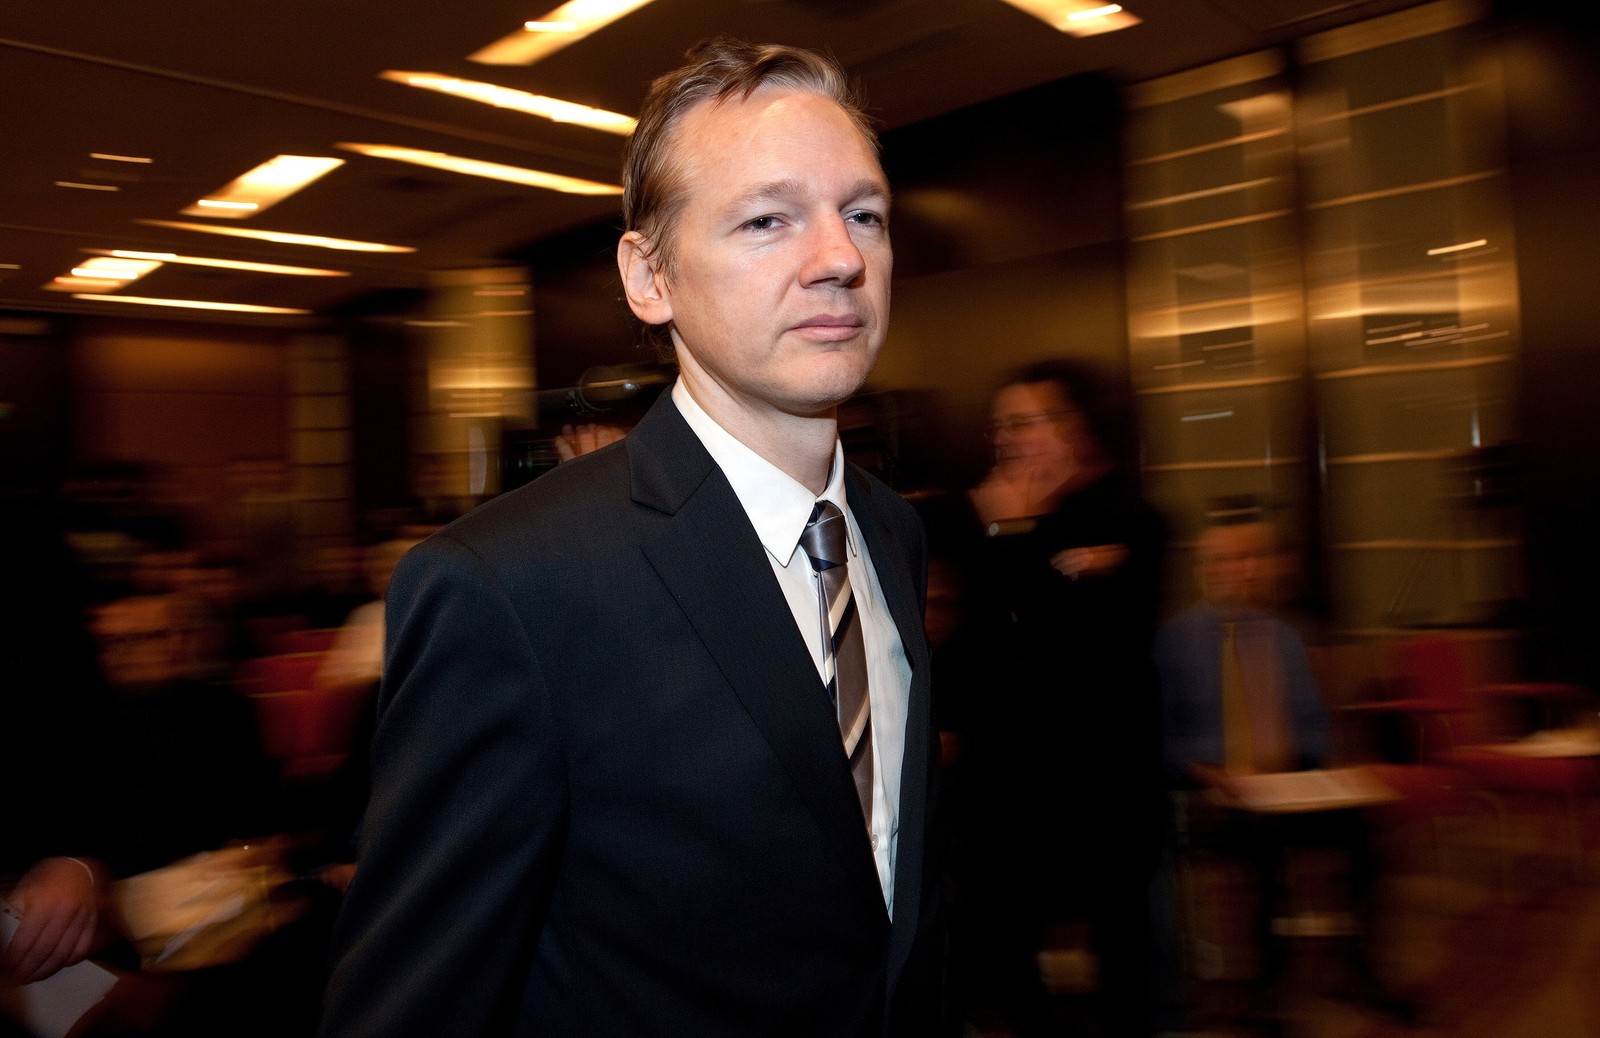 Foto de 2010 mostra o fundador do site Wikileaks, Julian Assange, chegando para se dirigir à mídia em uma conferência de imprensa no hotel Park Plaza, no centro de Londres. — Foto: AFP / Leon Neal